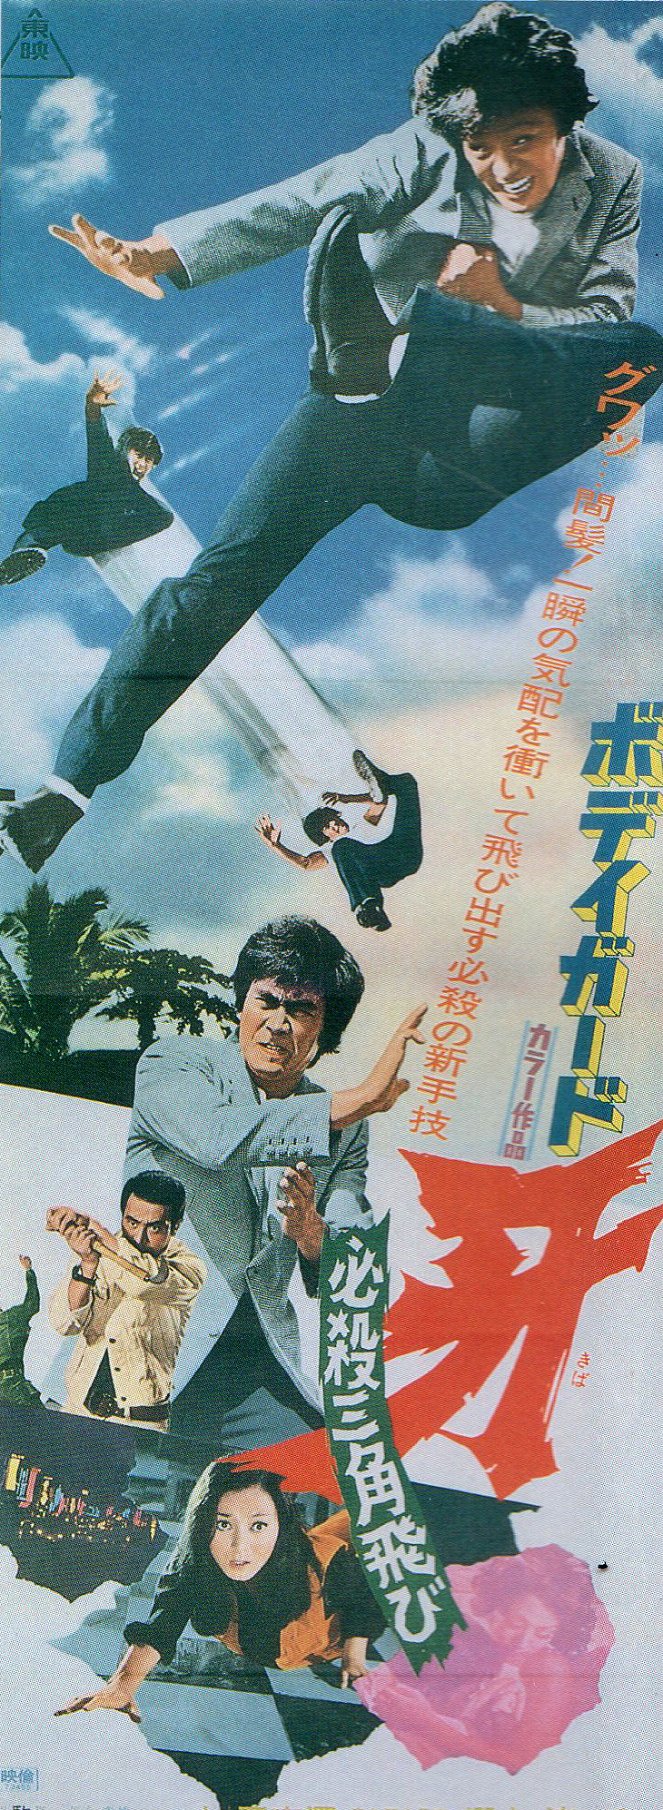 Karate Killer - Posters